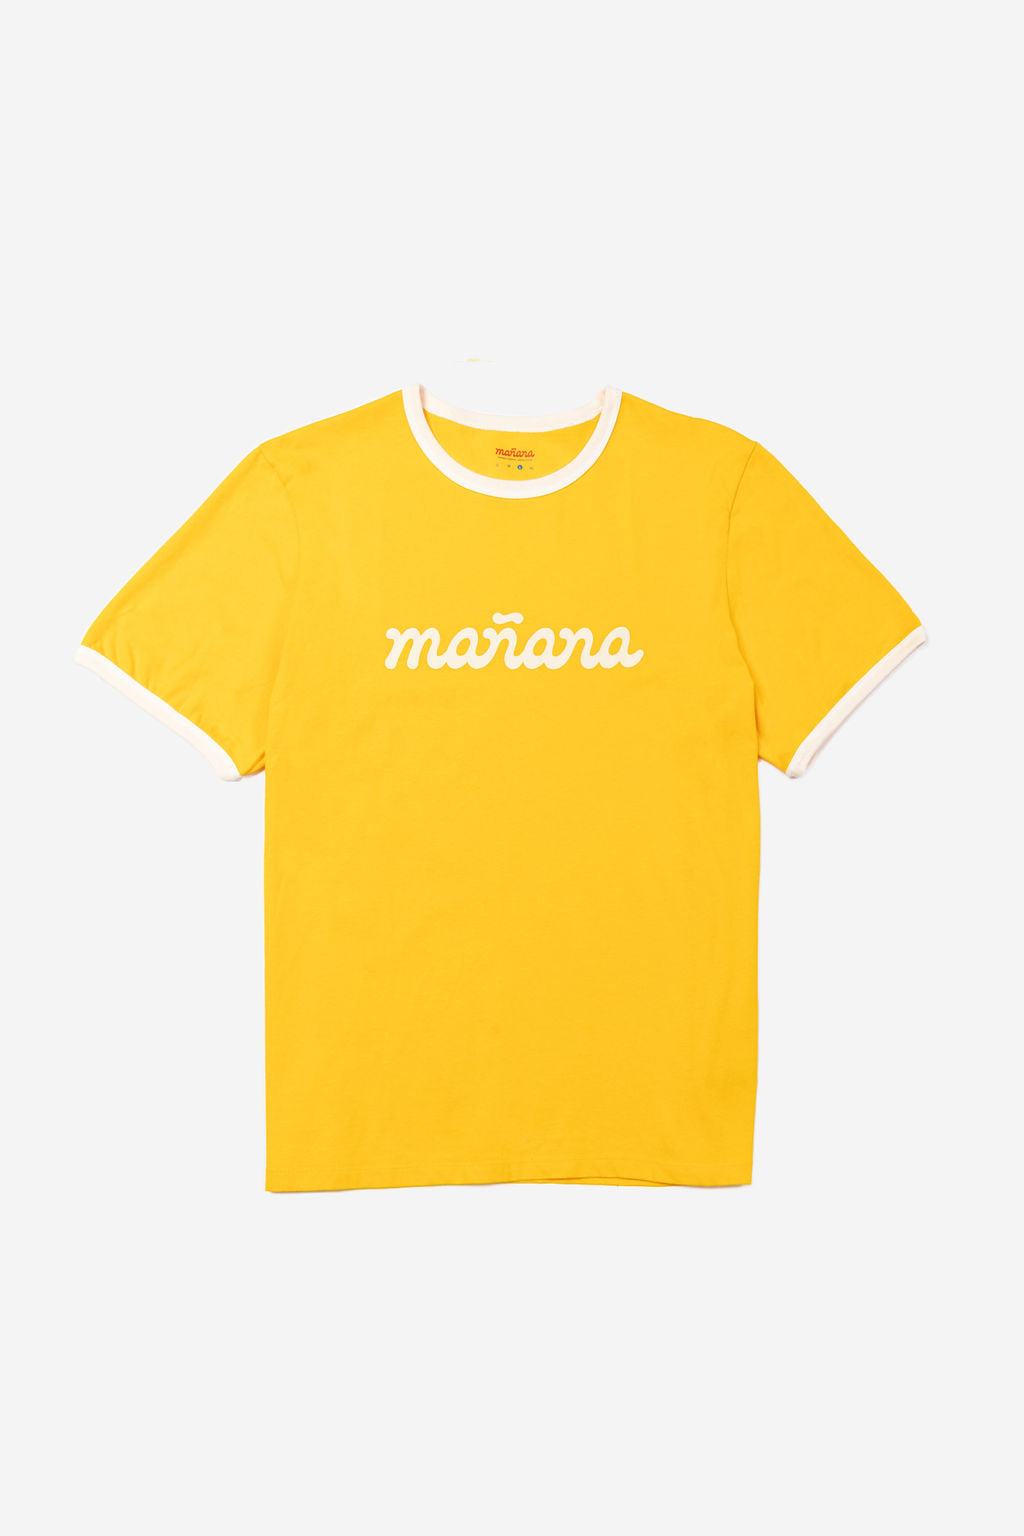 Yellow Logo Ringer Shirt having Manana branding